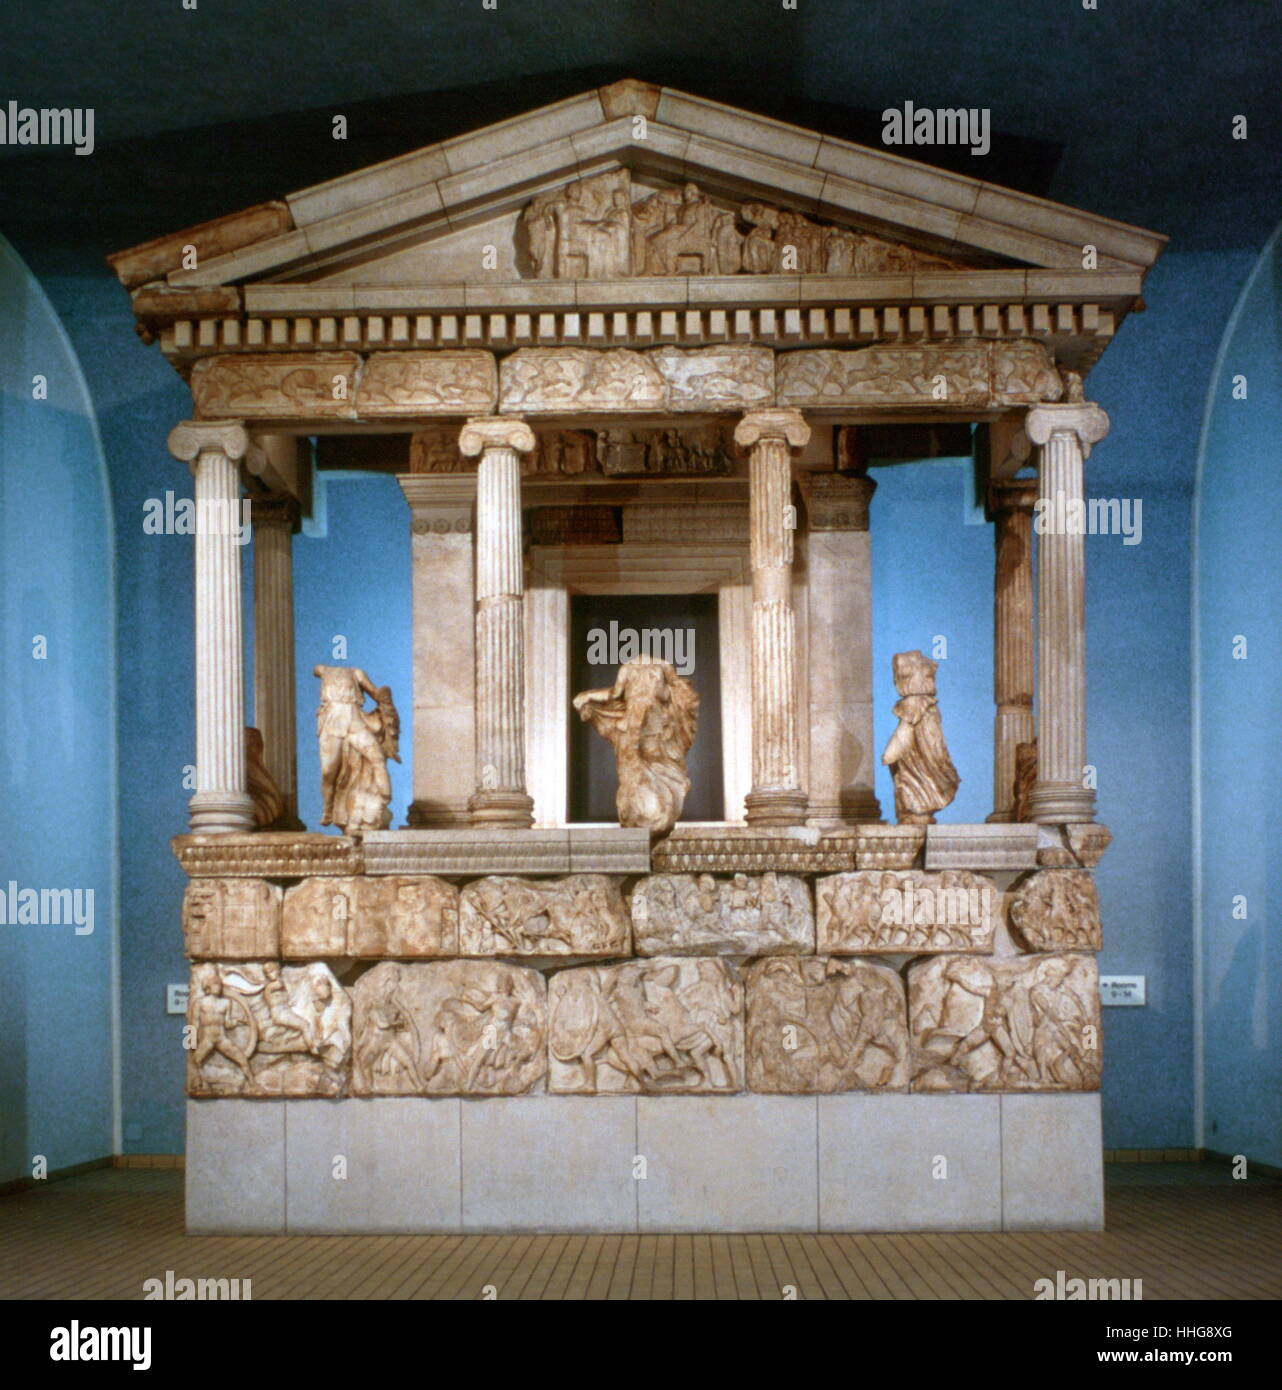 8. Nereid Monument (390–380 b.c.e. ), Xanthos (British Museum website, ).